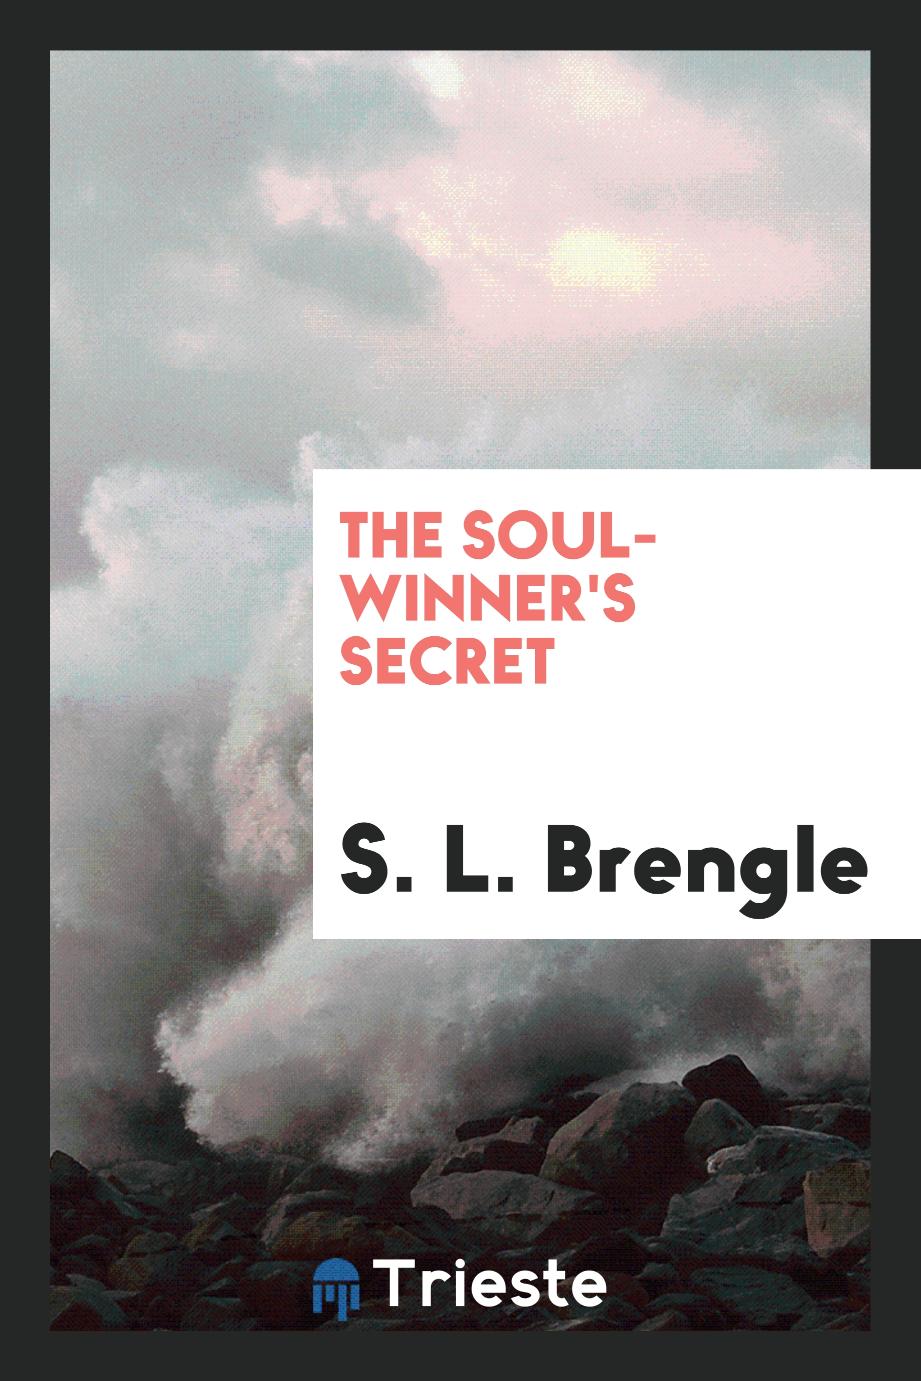 The soul-winner's secret